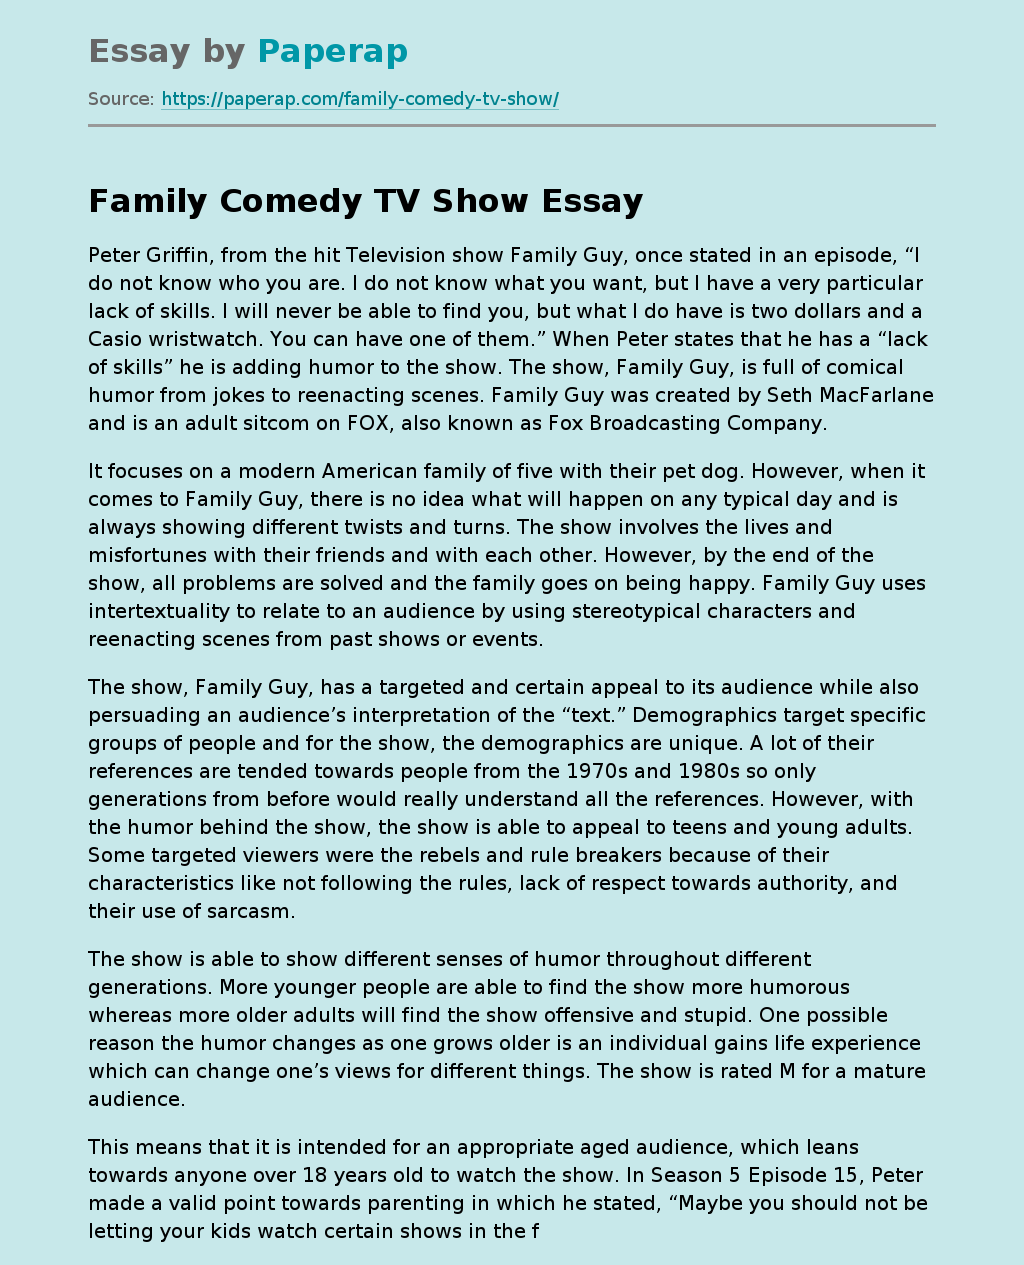 Family Comedy TV Show